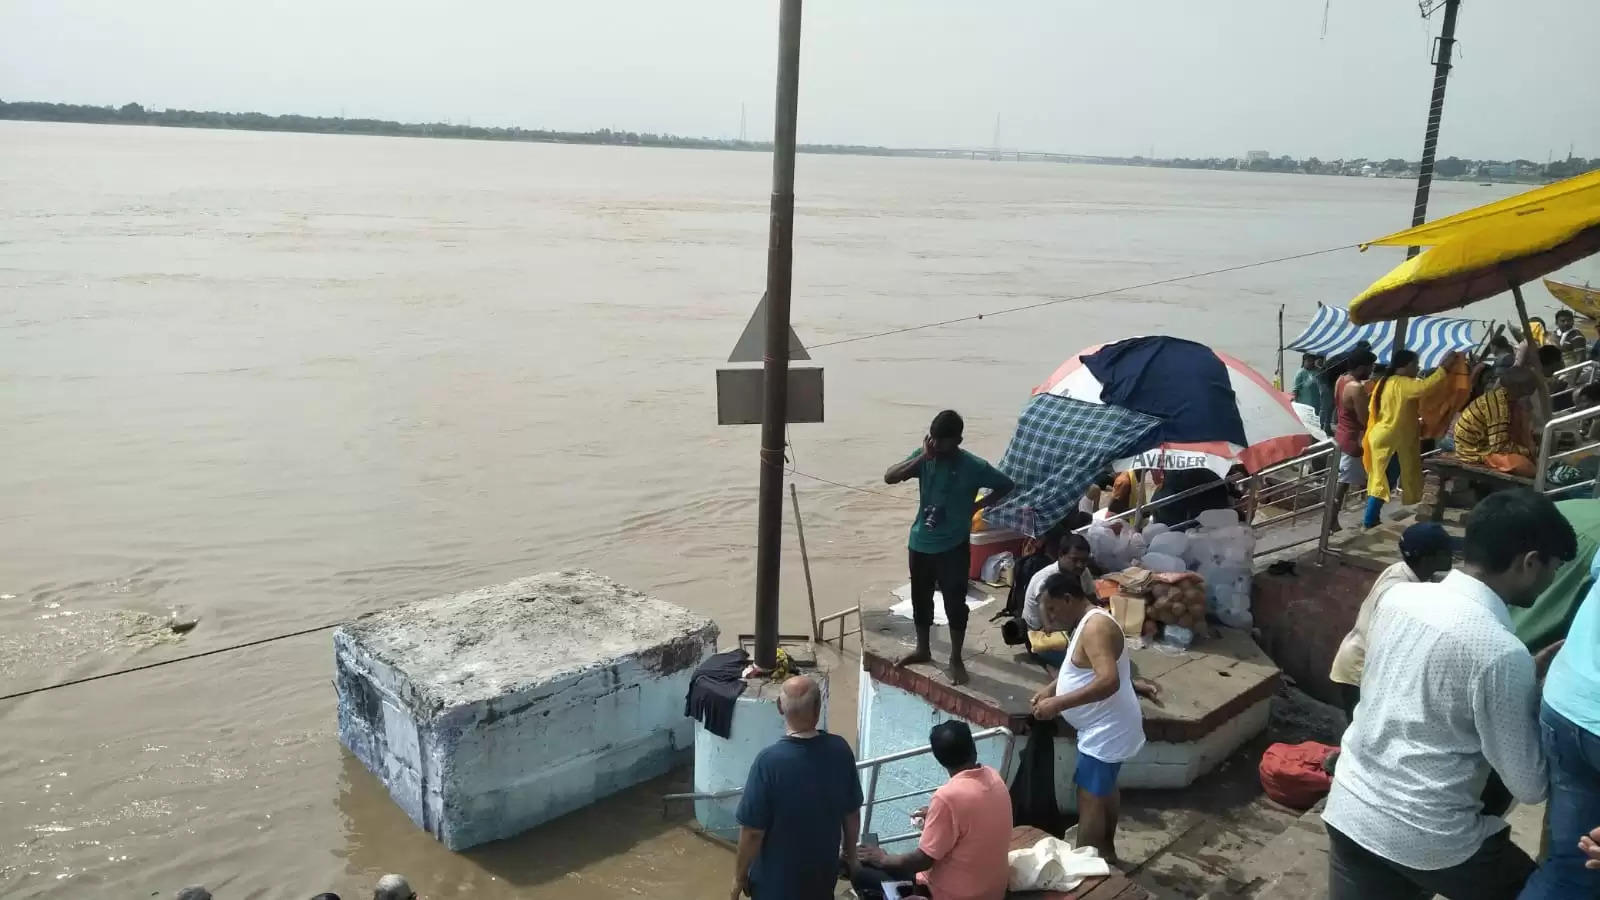 Varanasi Ganga Flood: जलमग्न हुआ काशी का प्रसिद्ध हरिश्चंद्र घाट, 3 सेंटीमीटर प्रति घंटा की रफ्तार से बढ़ रहा जलस्तर